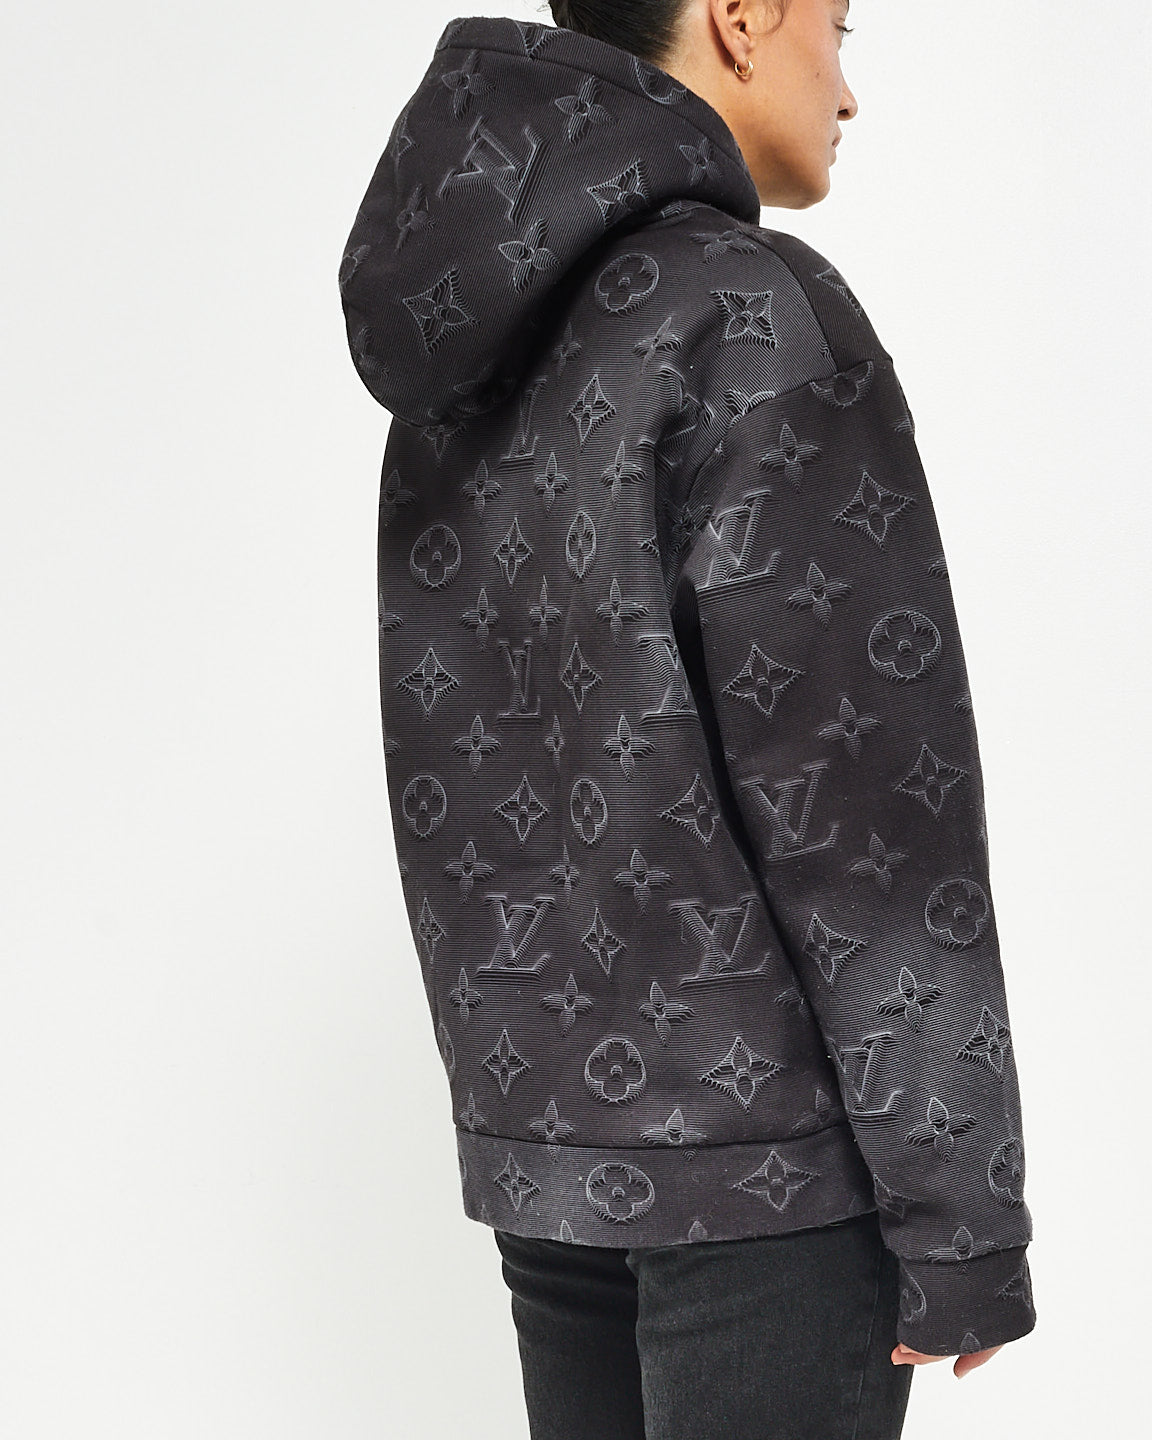 Louis Vuitton Black/Grey 3D Monogram Hoodie Sweatshirt - M